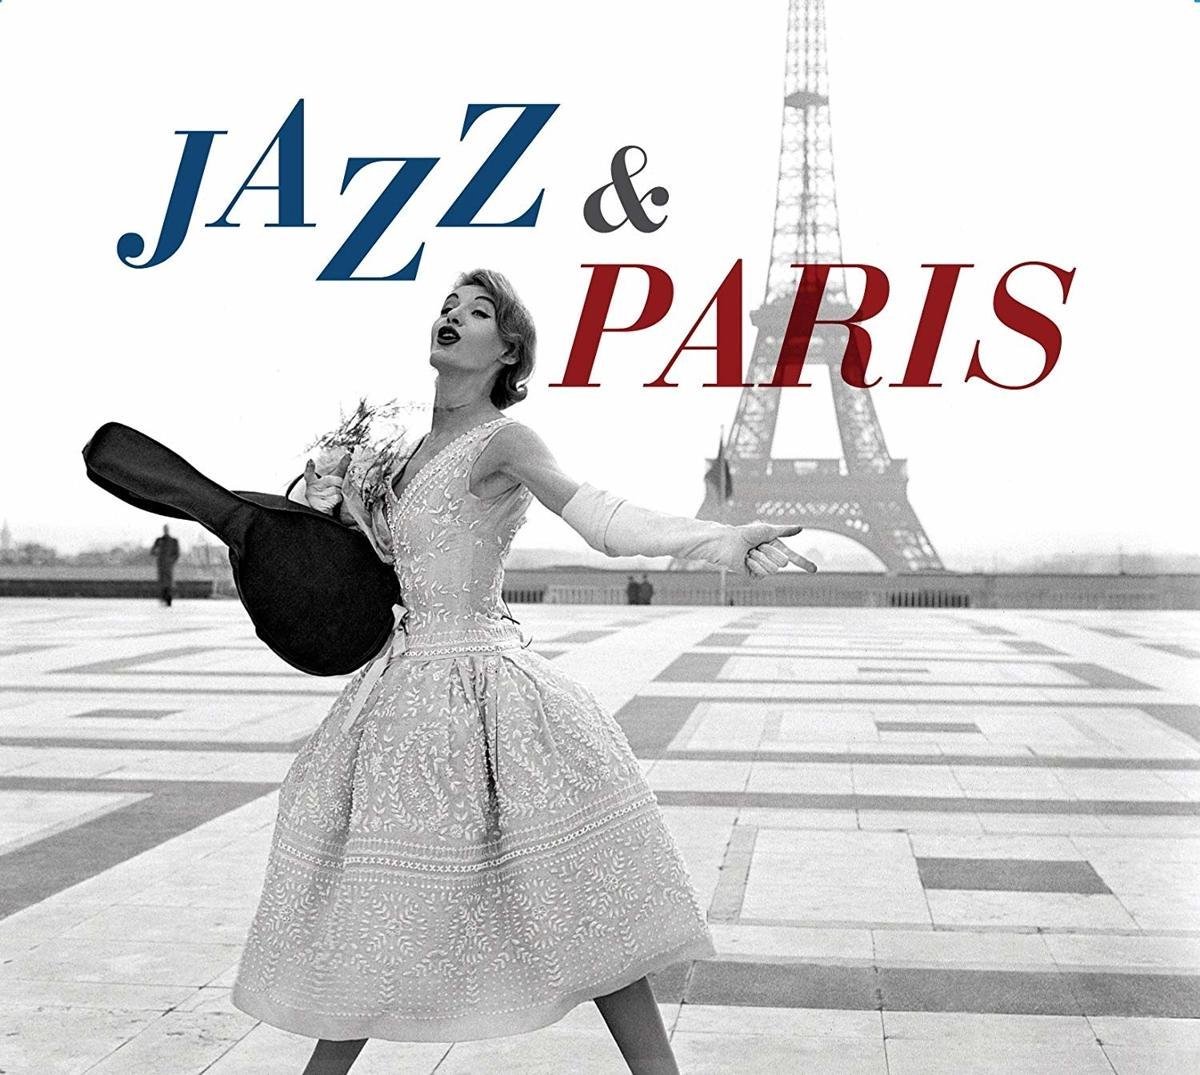 Miss paris песня. Джаз. Джаз в Париже. Jazz обложки альбомов. New Jazz Classics обложка CD.